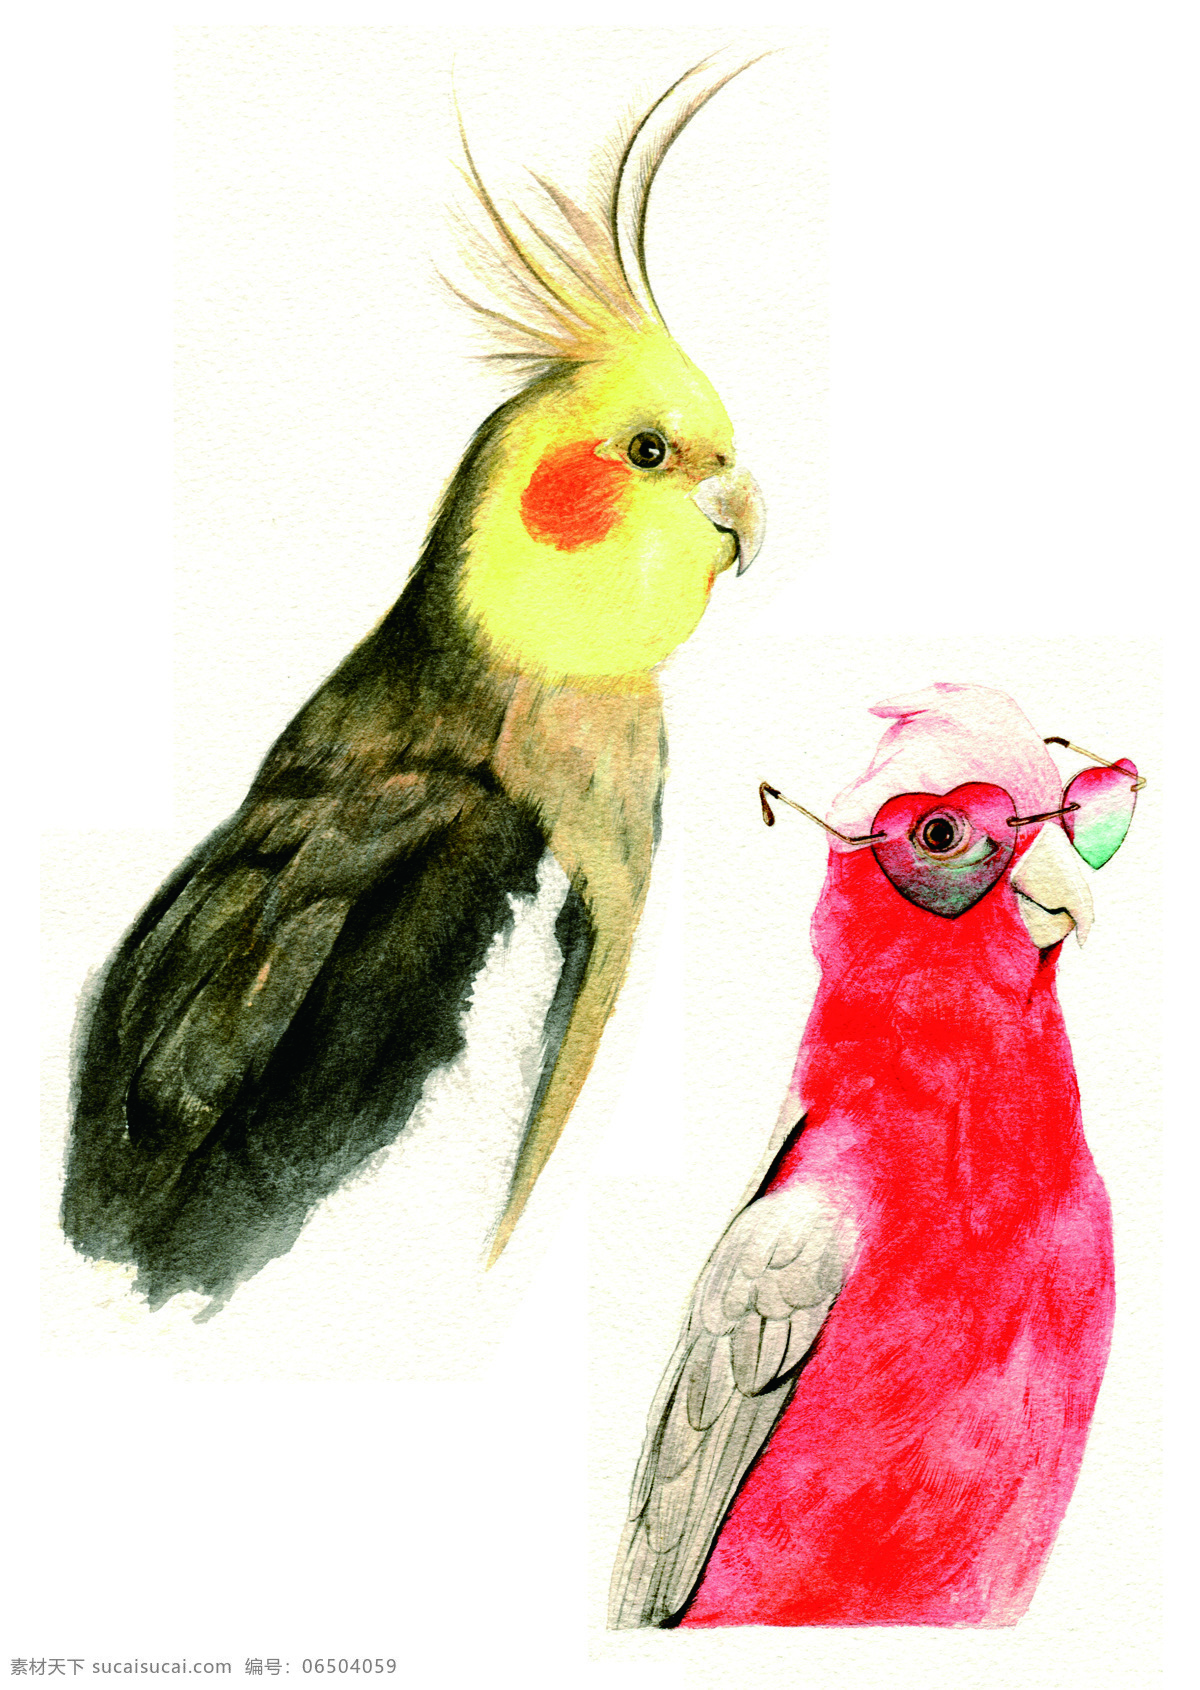 卡爱鹦鹉 手绘鹦鹉 卡通 动物 眼睛 俏皮 非主流 鸟类 共享图片 文化艺术 绘画书法